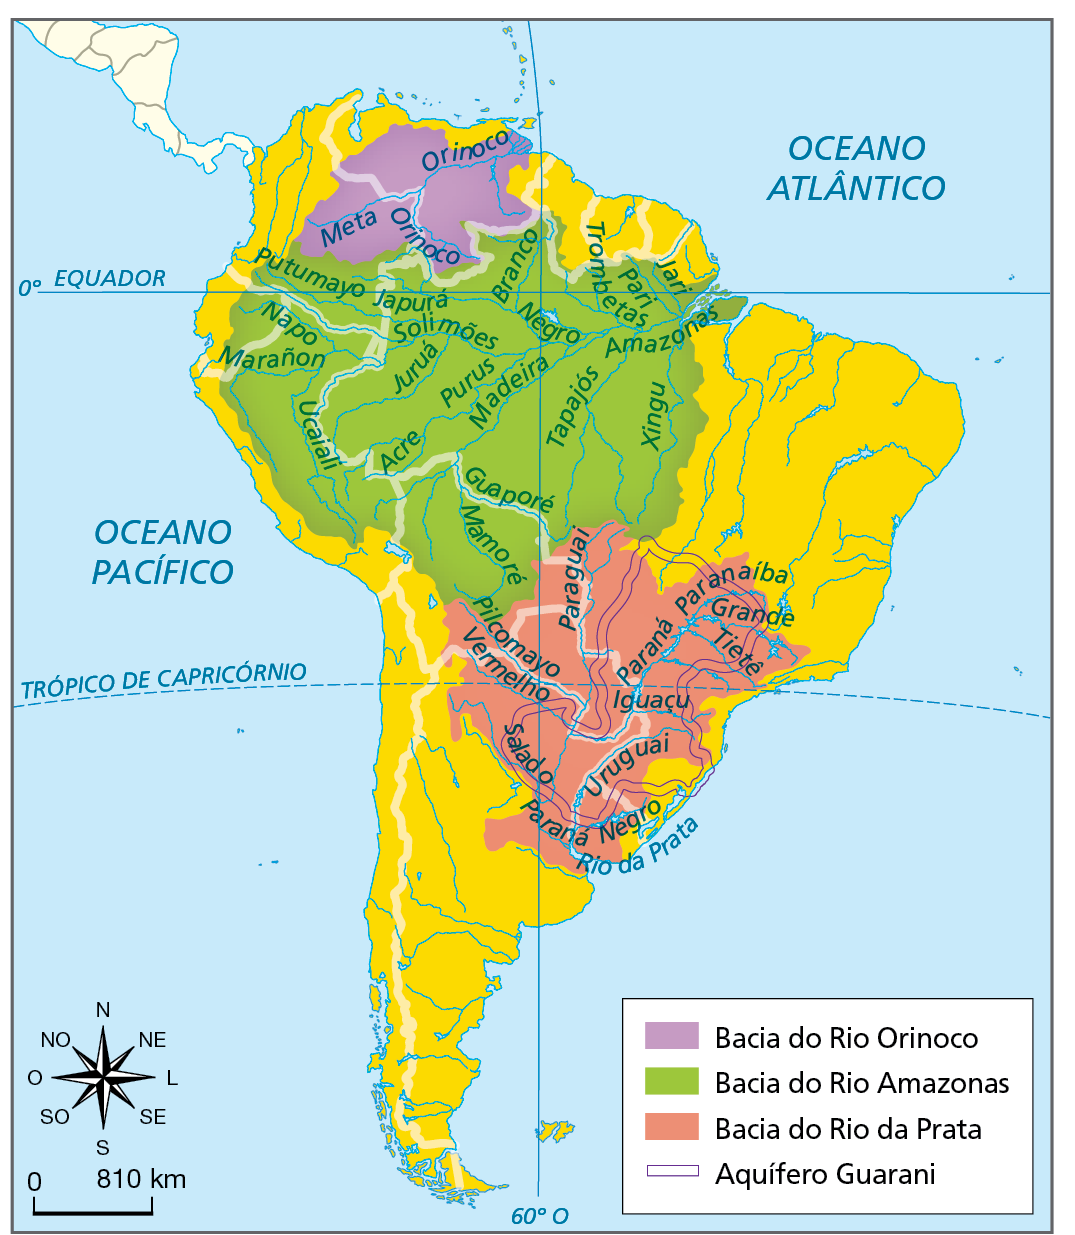 Mapa. Aquífero Guarani e bacias hidrográficas dos rios Orinoco, Amazonas e da Prata.  Mapa da América do Sul com a representação dos principais rios, das bacias hidrográficas e do Aquífero Guarani. As bacias são representadas por manchas de cores. Bacia do Rio Orinoco, na cor lilás: no extremo norte da América do Sul, em grande parte do território de Venezuela e Colômbia. Rios principais: Orinoco e Meta.  Bacia do Rio Amazonas: norte e parte do centro da América do Sul. Rios principais: Amazonas, Jari, Pari, Trombetas, Negro, Branco, Japurá, Putumayo, Napo, Marañon, Solimões, Xingu, Tapajós, Madeira, Purus, Juruá, Ucaiali, Acre, Guaporé e Mamoré. Bacia do Rio Prata, em rosa: na porção centro-sul e sudeste da América do Sul. Rios principais: da Prata, Paraná, Negro, Uruguai, Salado, Iguaçu, Paraná, Paranaíba, Grande, Tietê, Pilcomayo e Vermelho.  Aquífero Guarani: contorna porção no centro sul da América do Sul. À esquerda, rosa dos ventos e escala de 0 a 810 quilômetros.